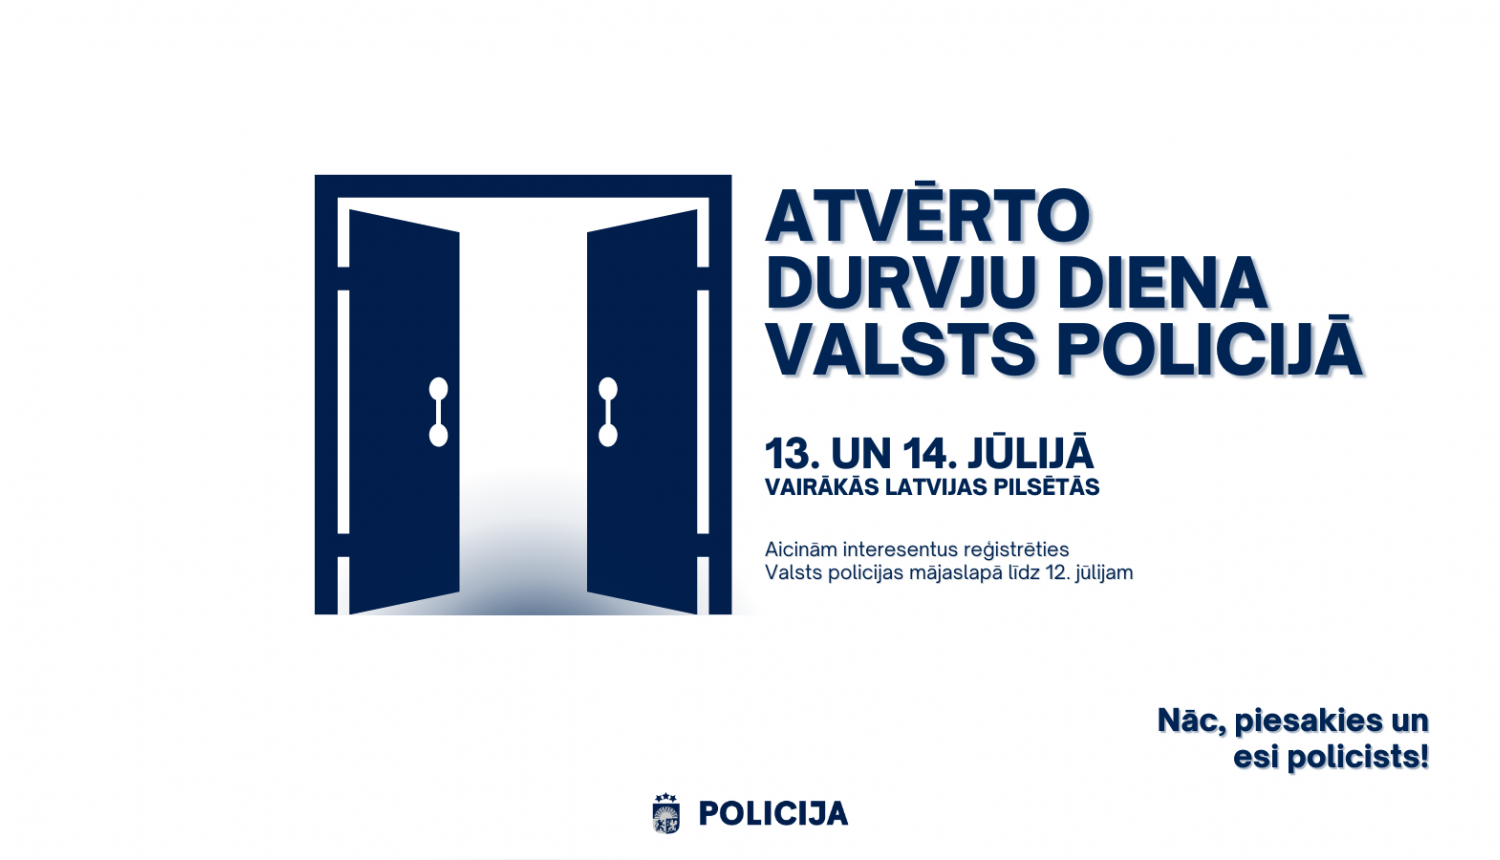 Valsts policijas atvērto durvju diena